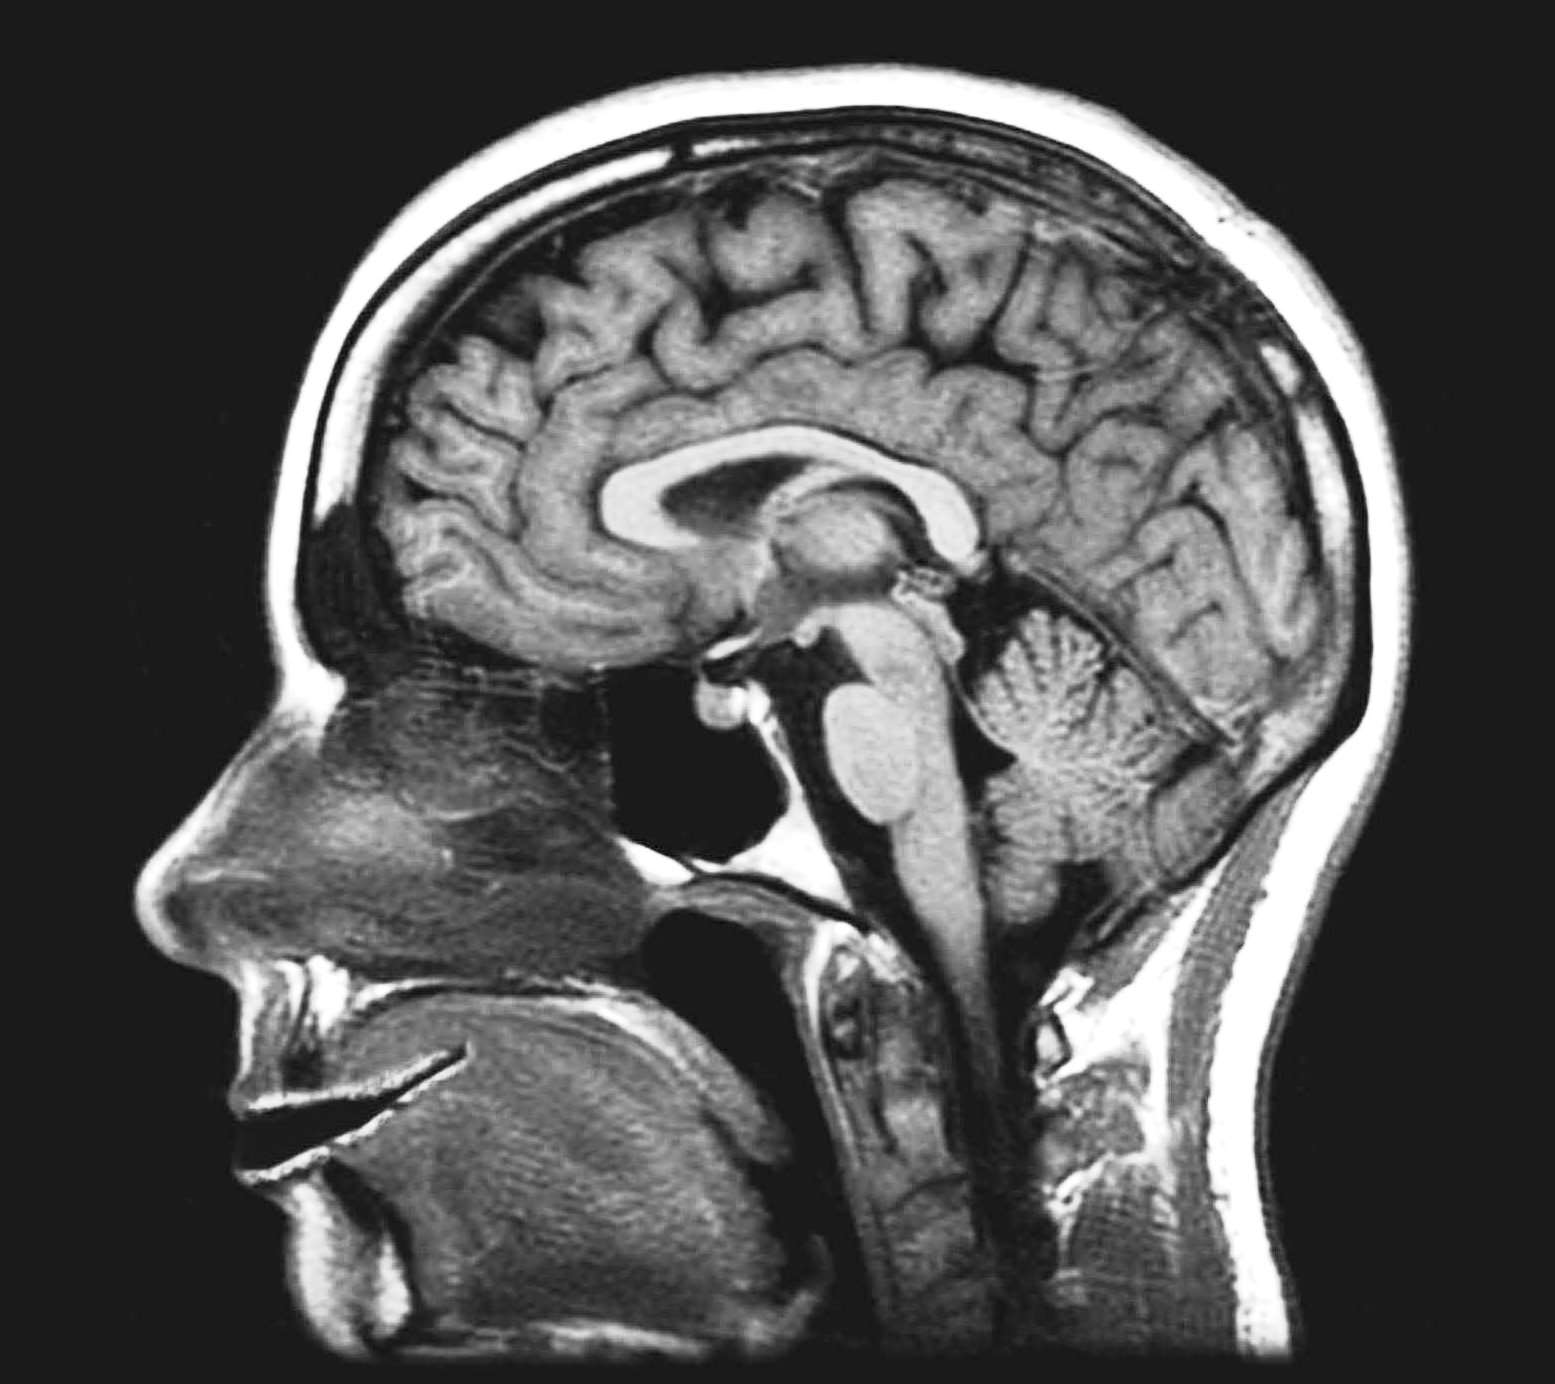 Фото снимок МРТ глазных орбит здорового человека (норма)